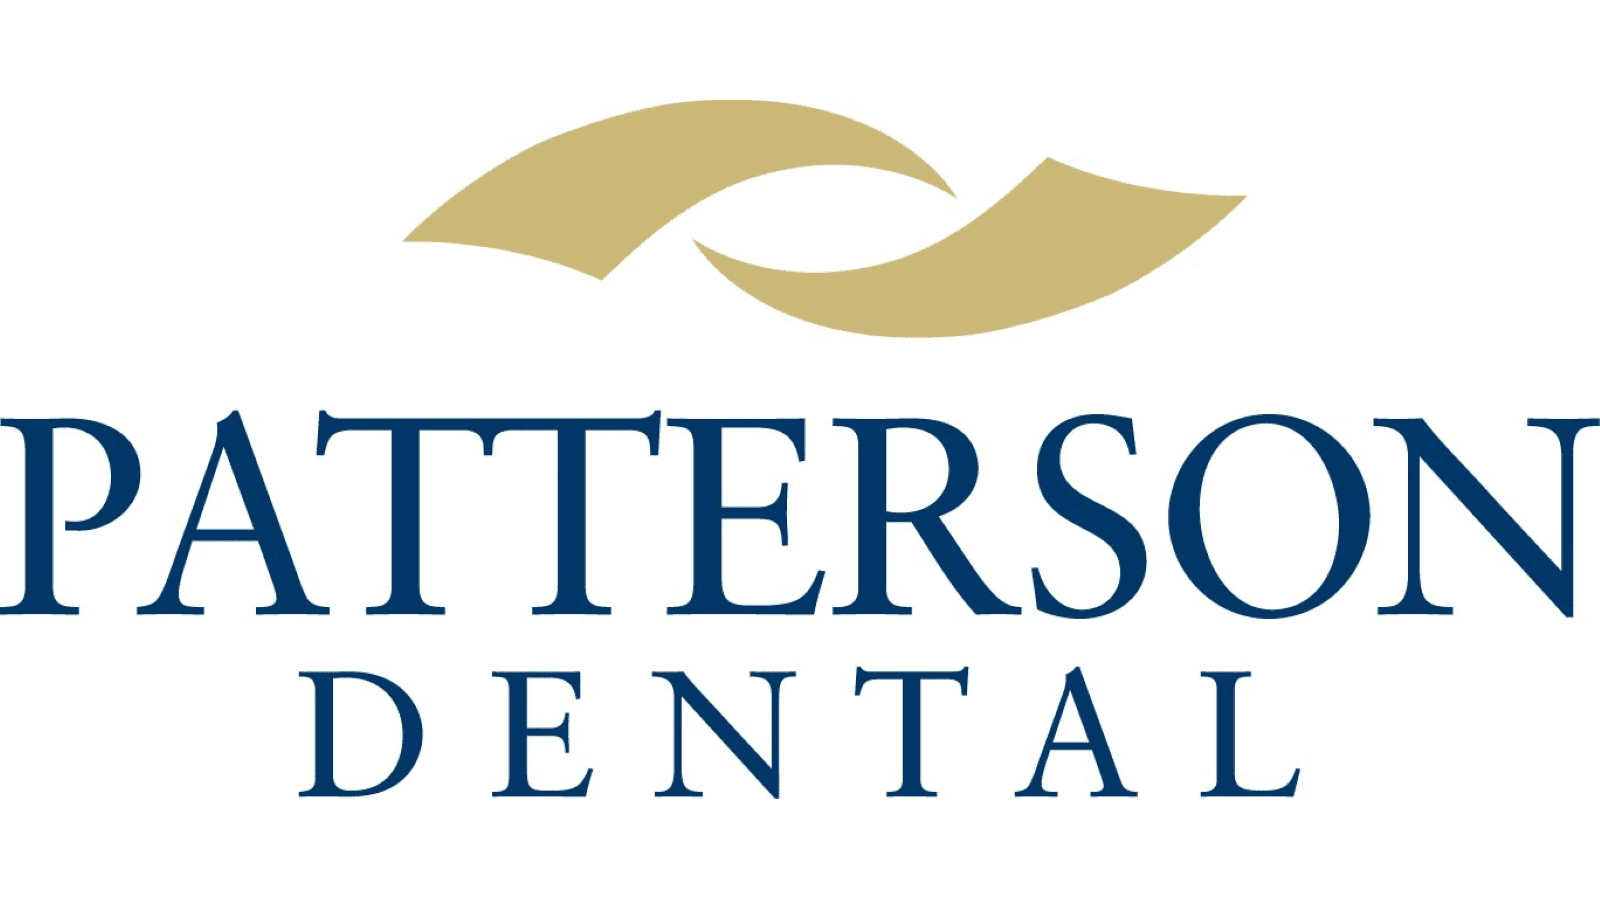 Patterson dental